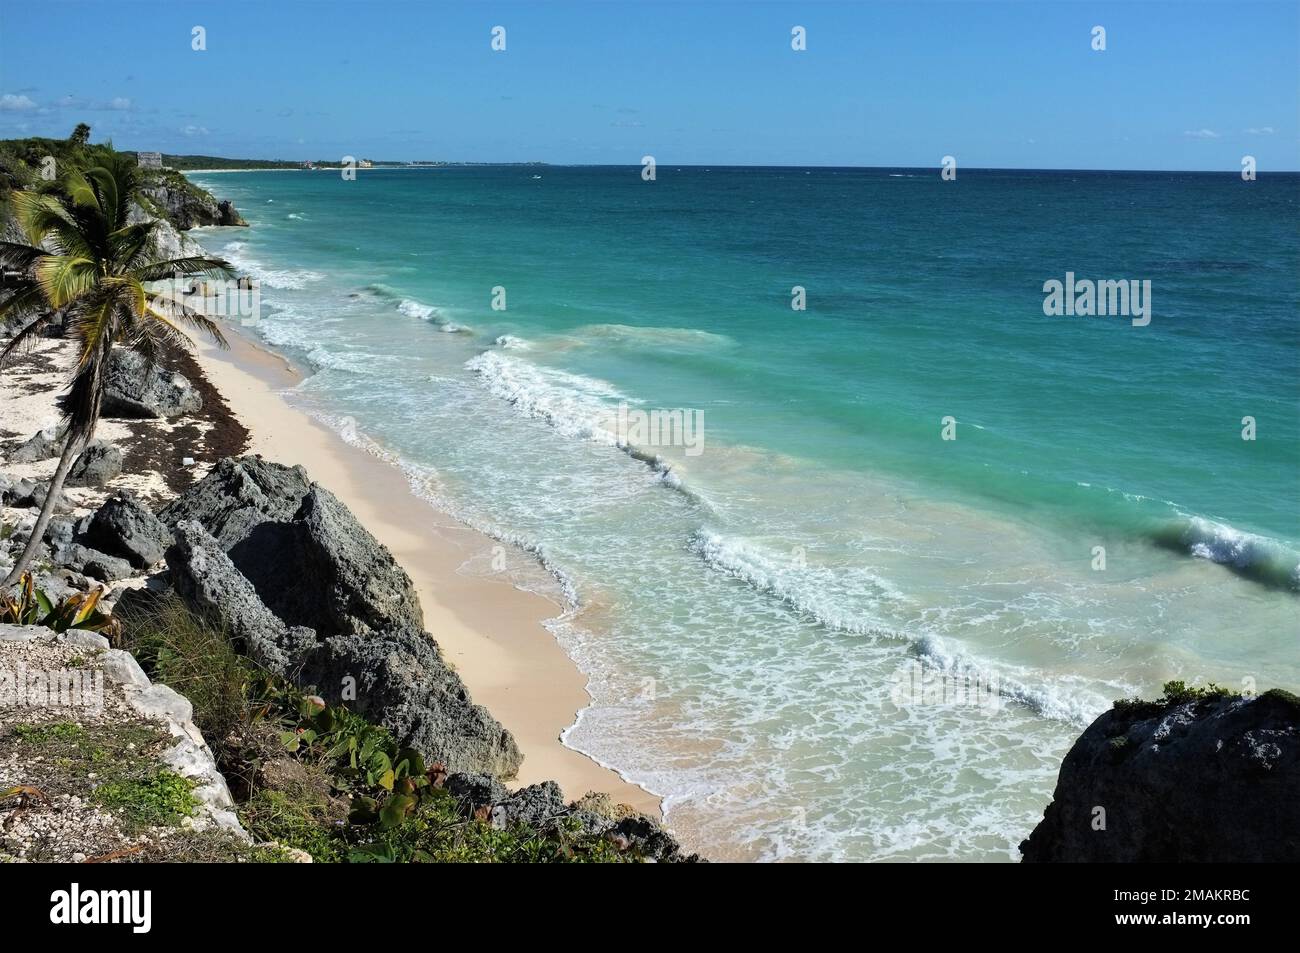 Mexican coastline in Tulum, Mexico. Stock Photo